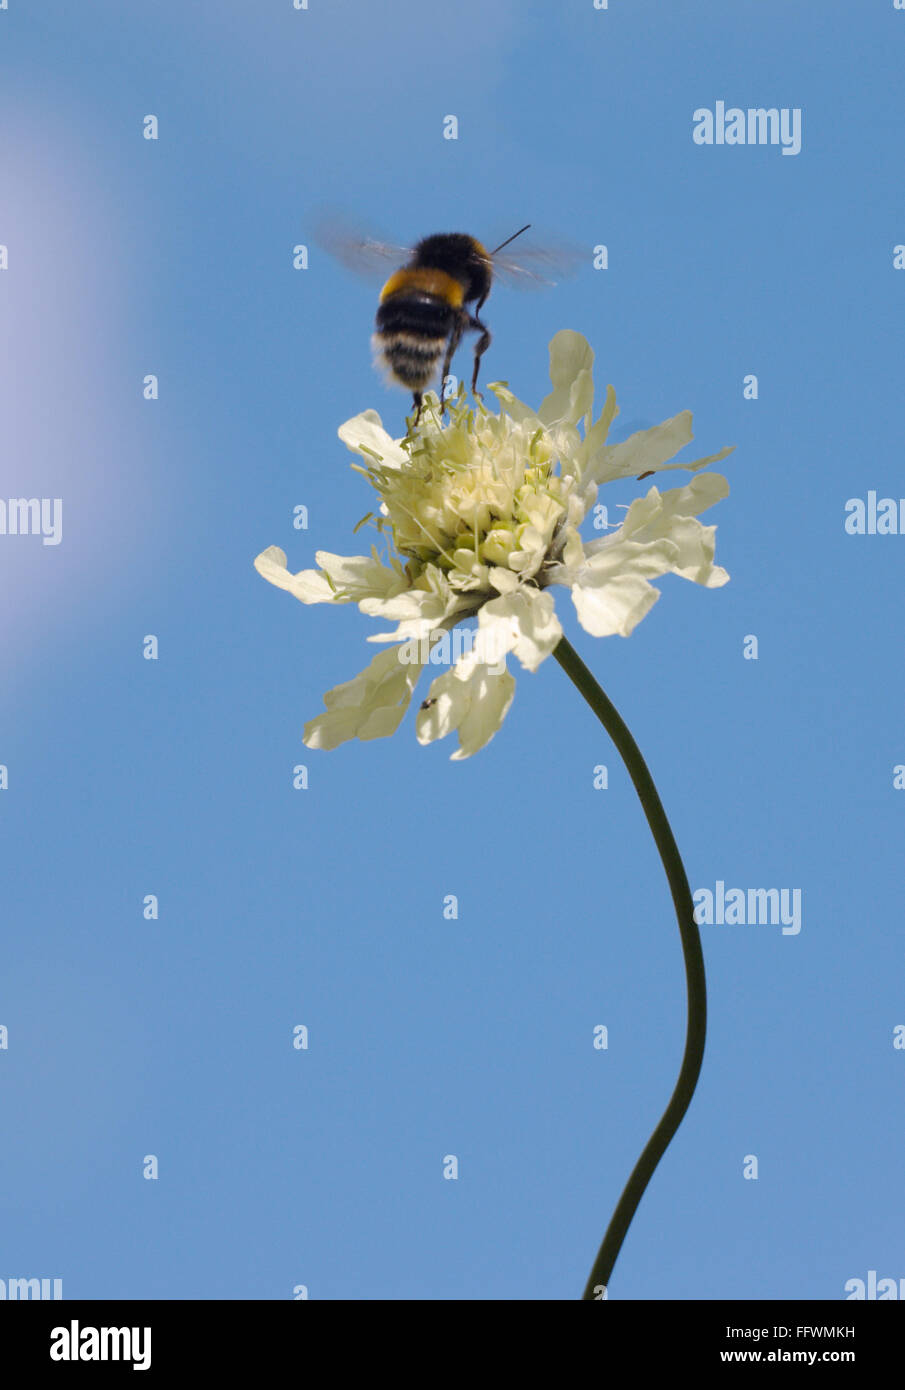 Abeille unique au milieu d'un saut d'une grande fleur blanche dans le ciel bleu Banque D'Images